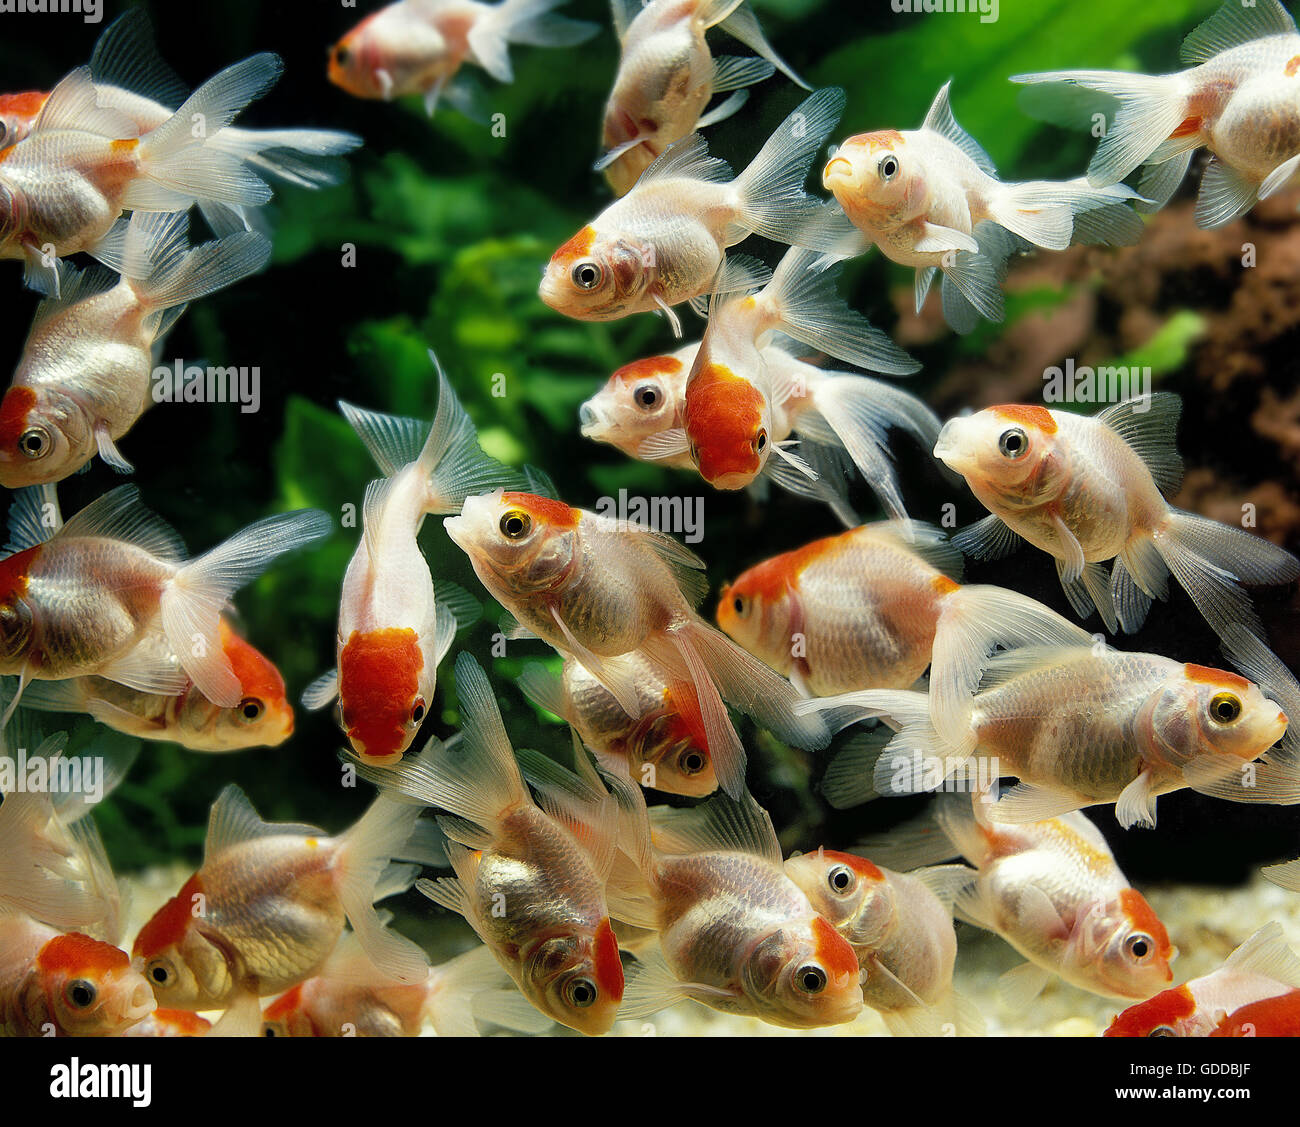 Young Oranda Goldfish, carassius auratus, Aquarium Fishes Stock Photo